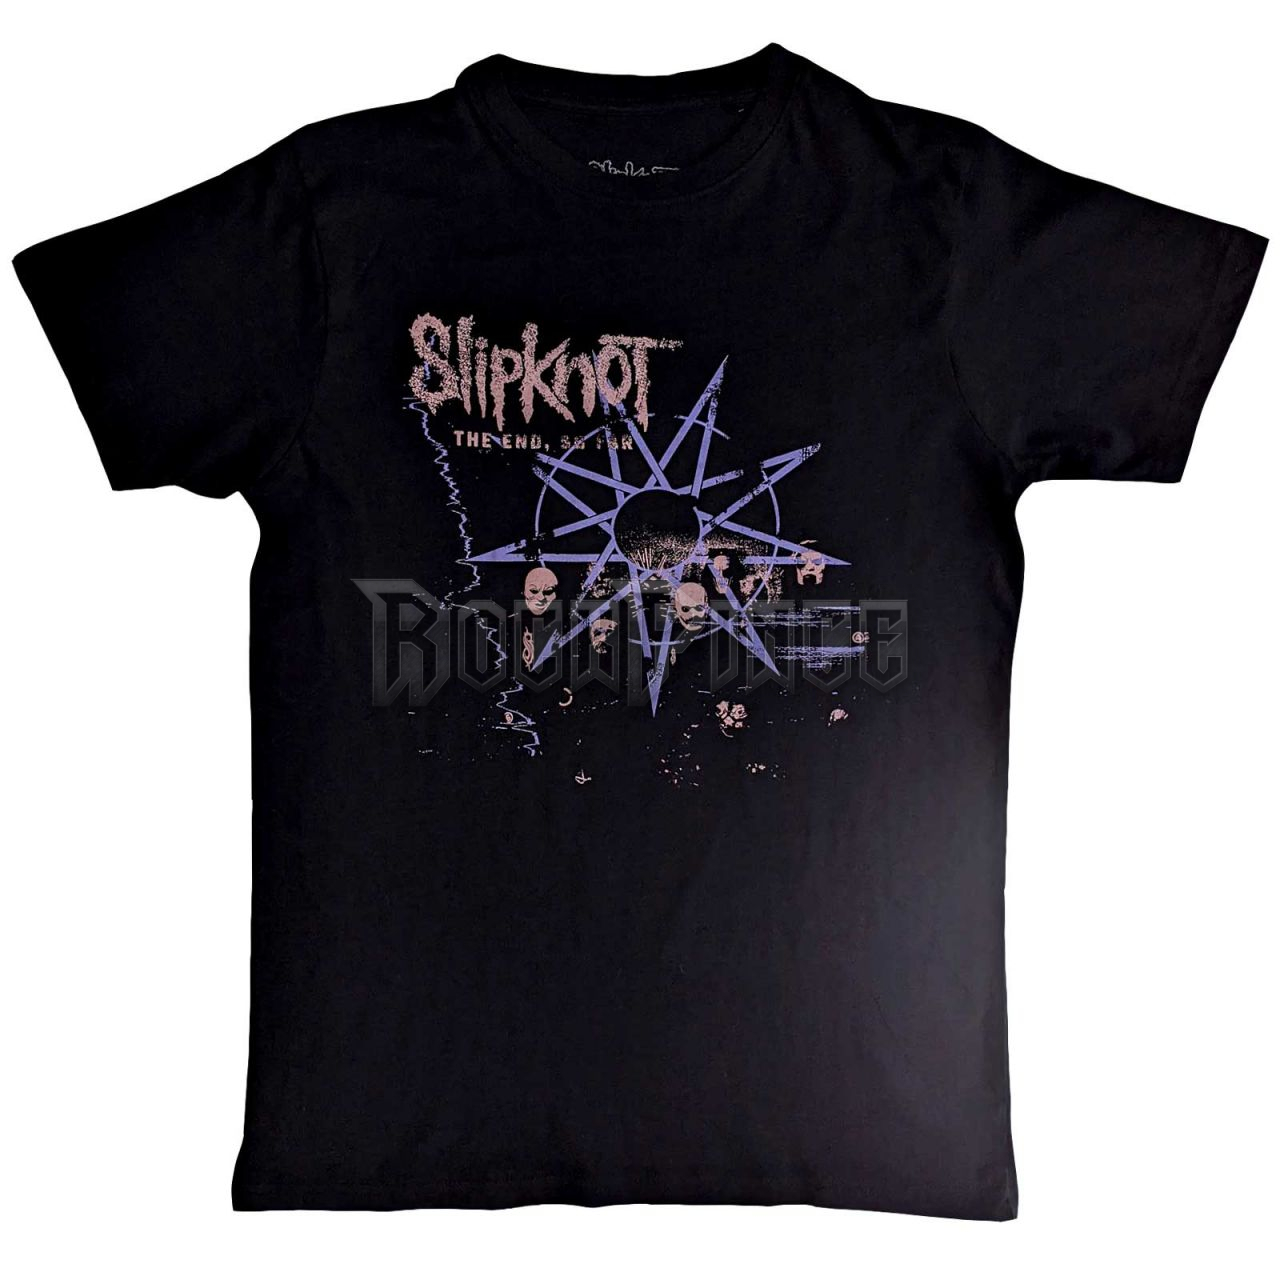 Slipknot - The End So Far Band Photo - unisex póló - SKTS104MB